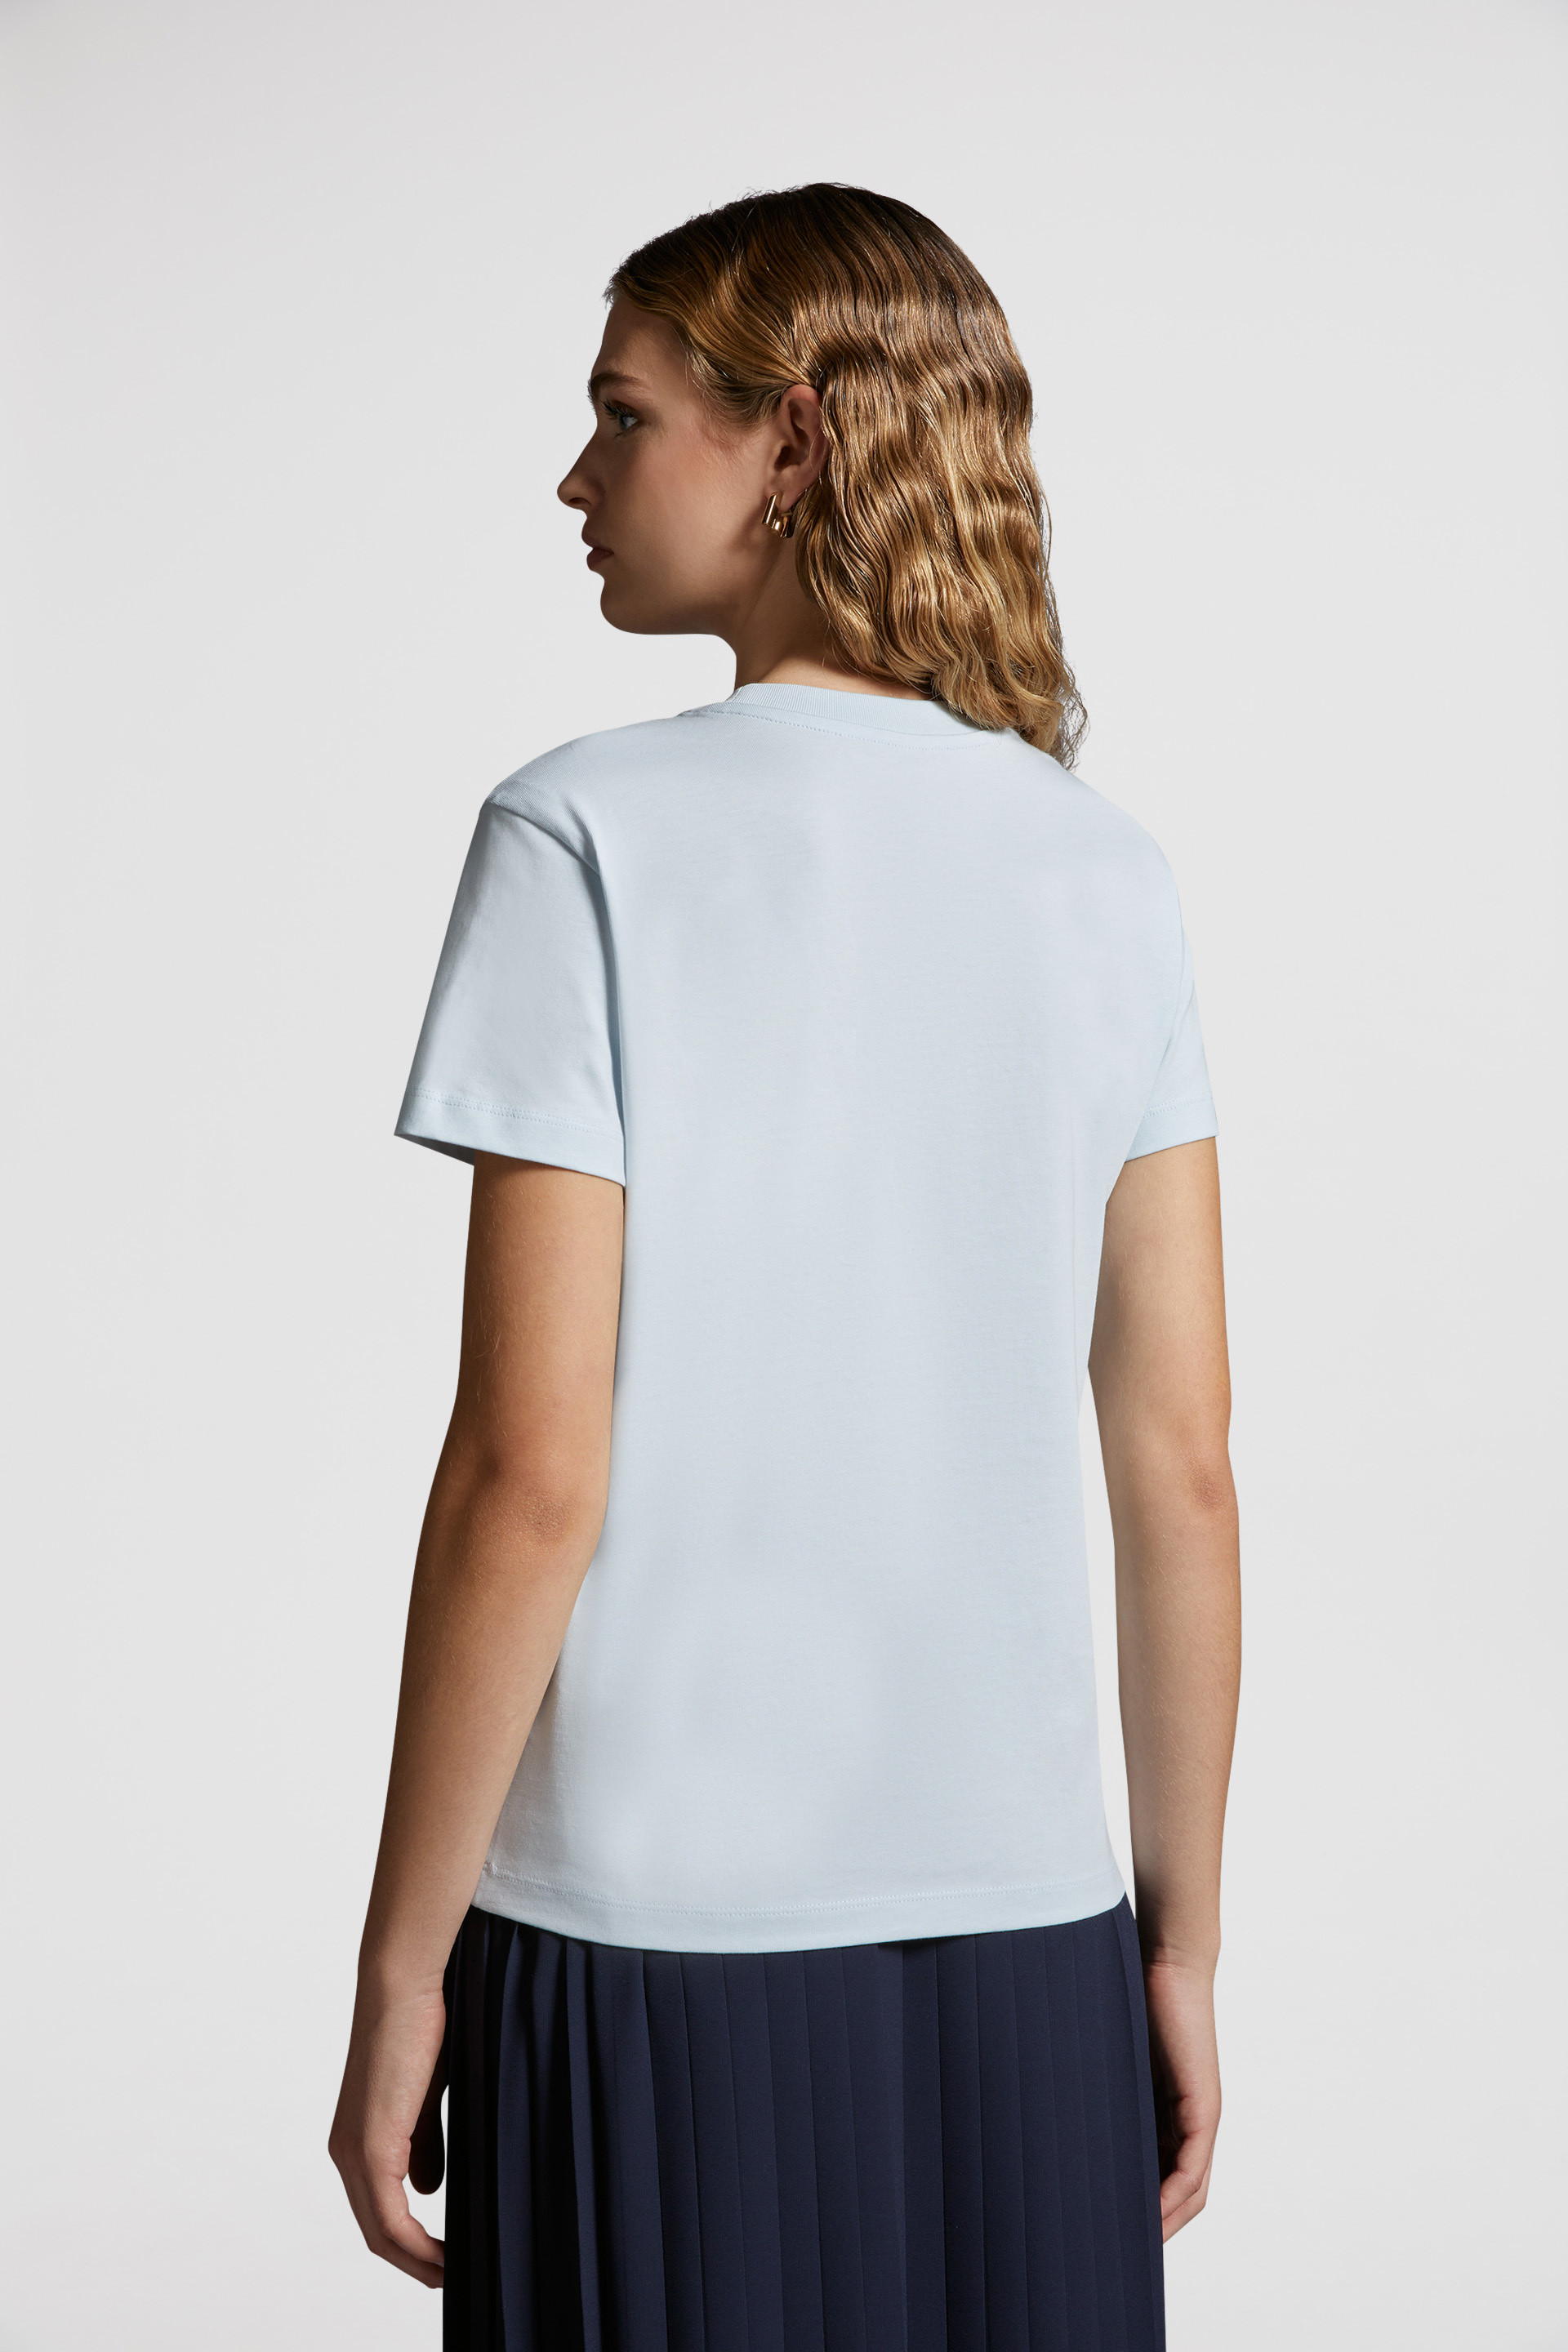 ライトブルー Tシャツ : トップ＆Tシャツ 向けの レディース 